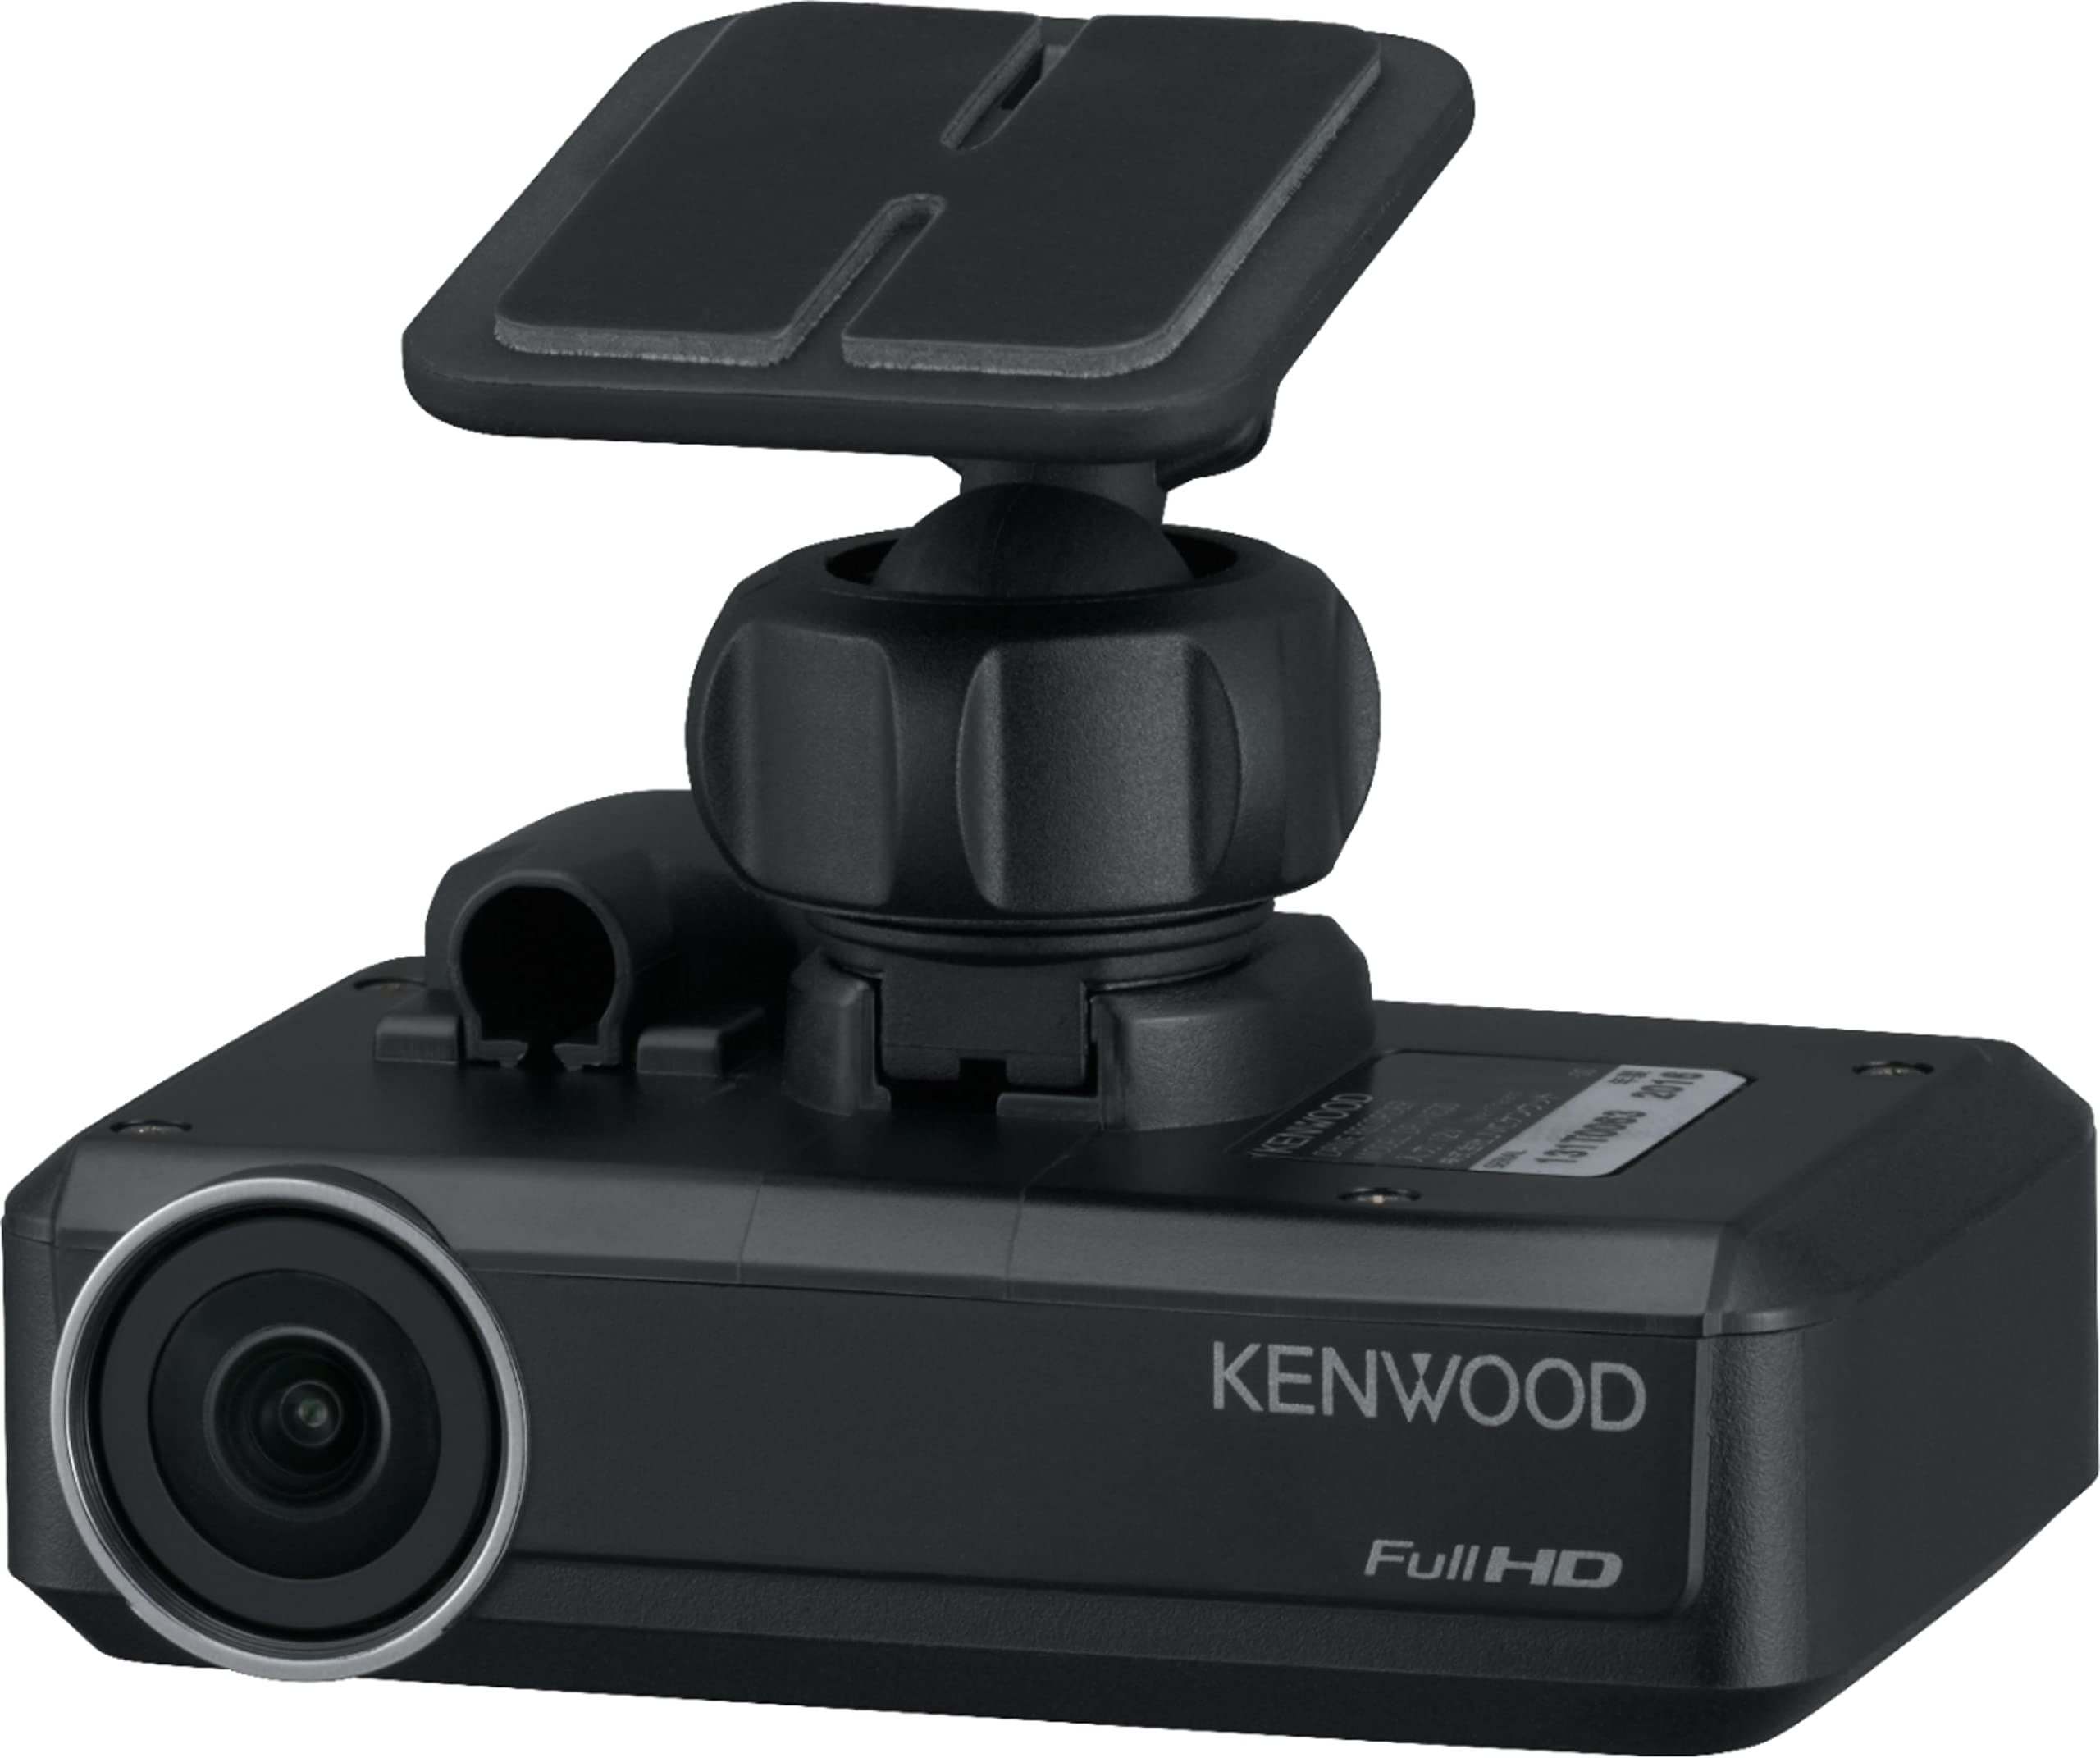 KENWOOD DRV-N520 Dash Cam